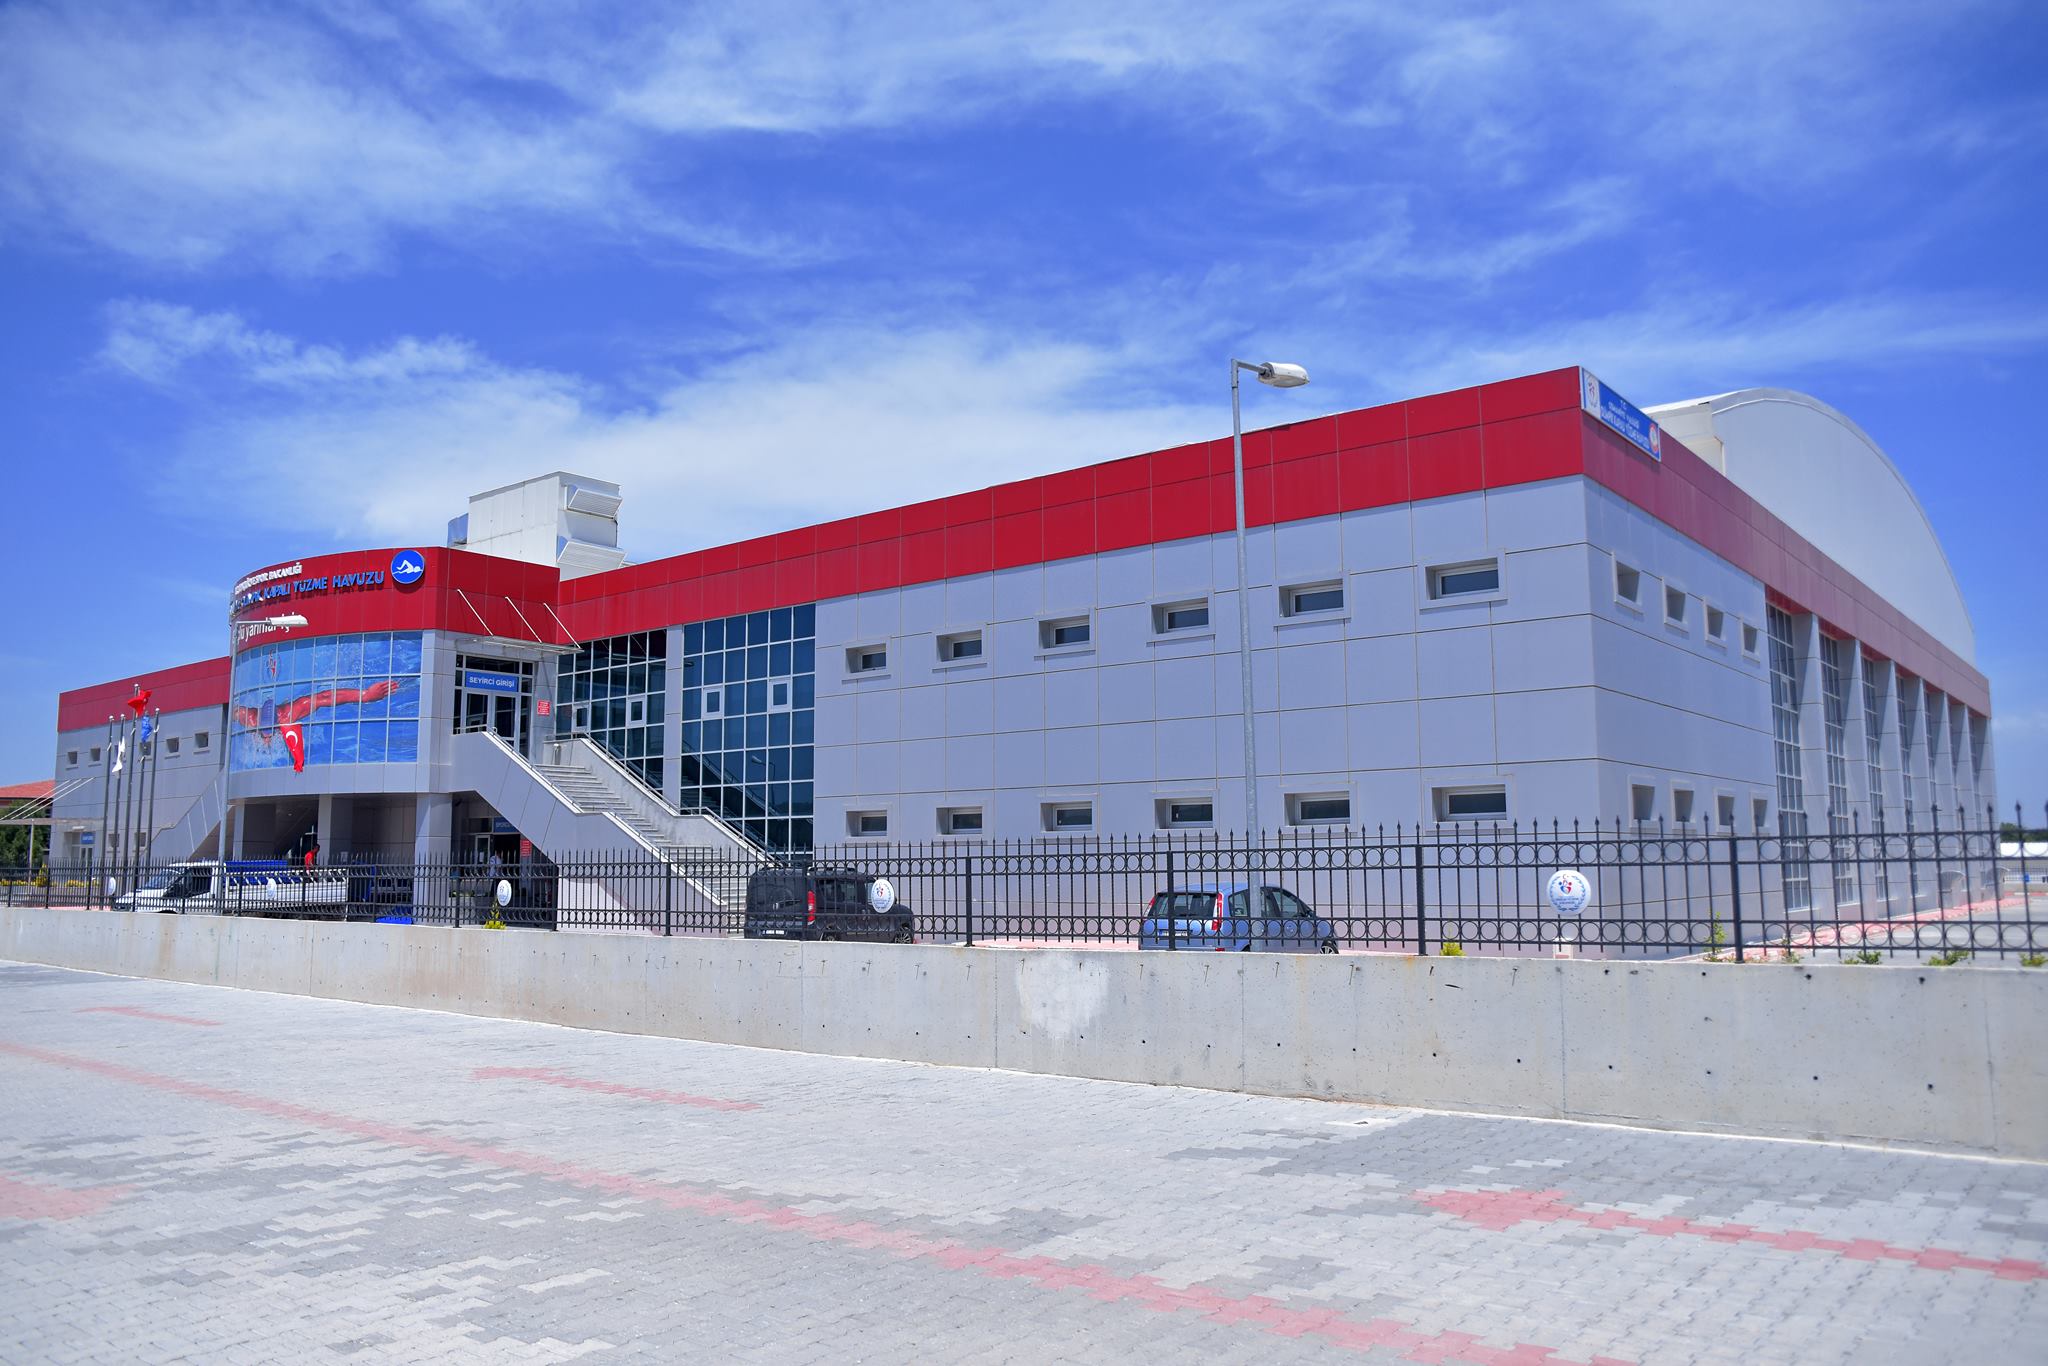 Osmaniye Olimpik yüzme havuzlu kapalı spor salonu (Onursal Proje)